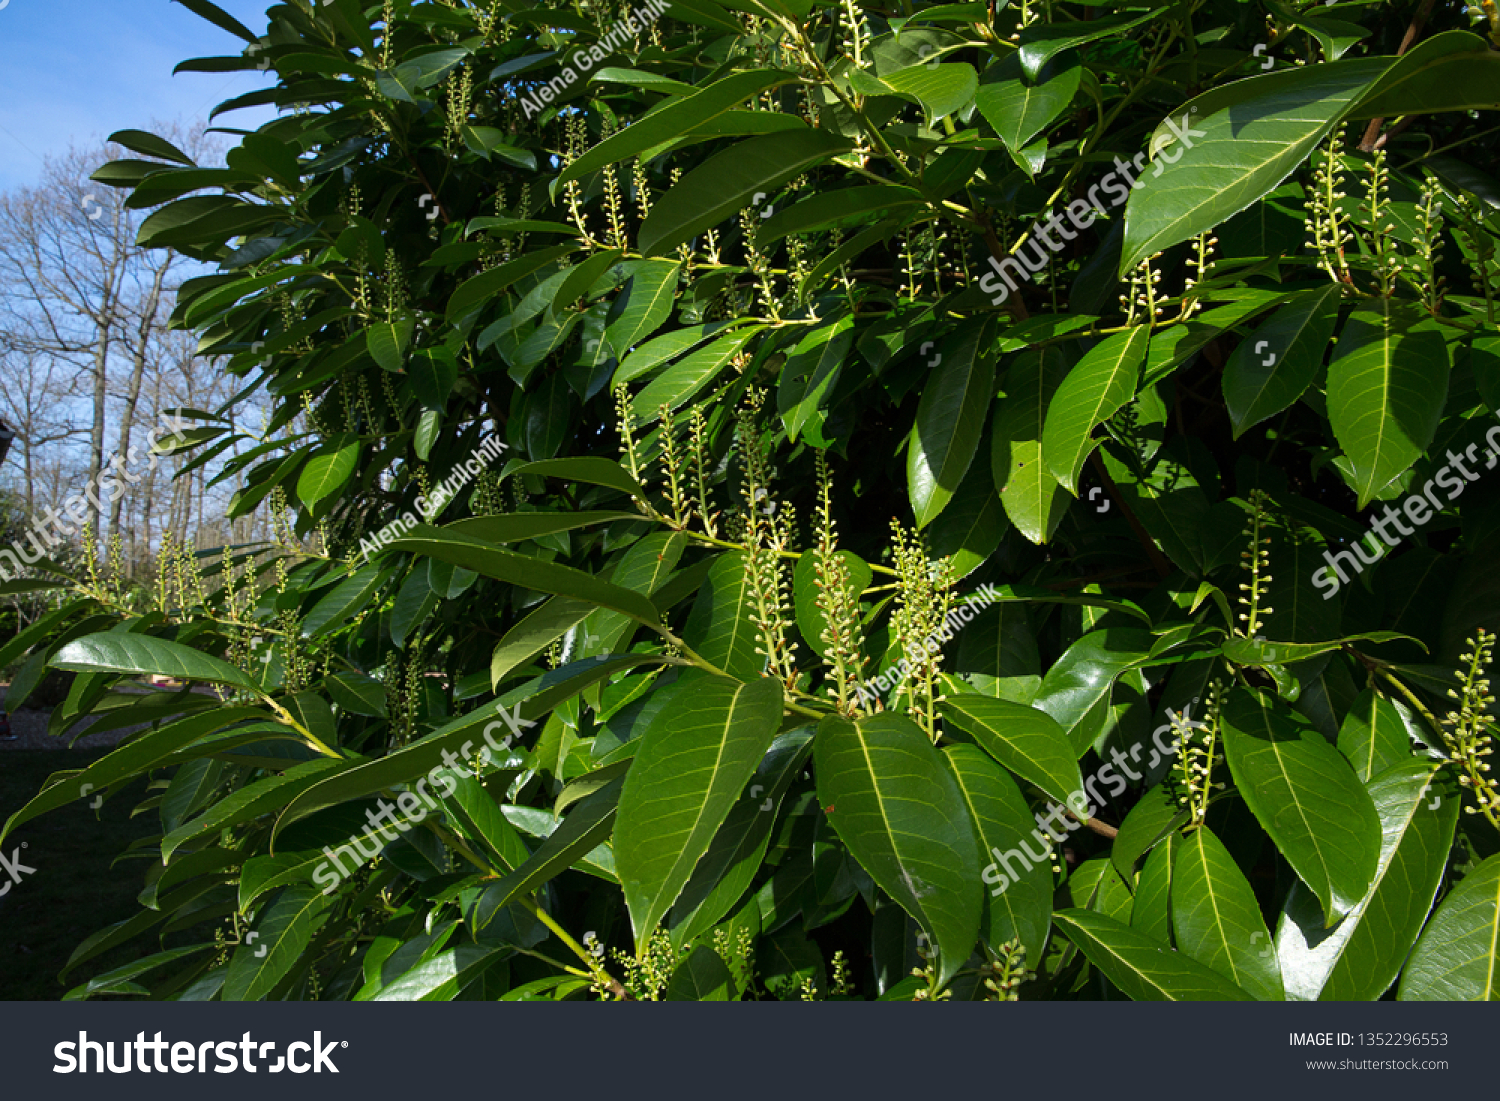 prunus laurocerasus leaf